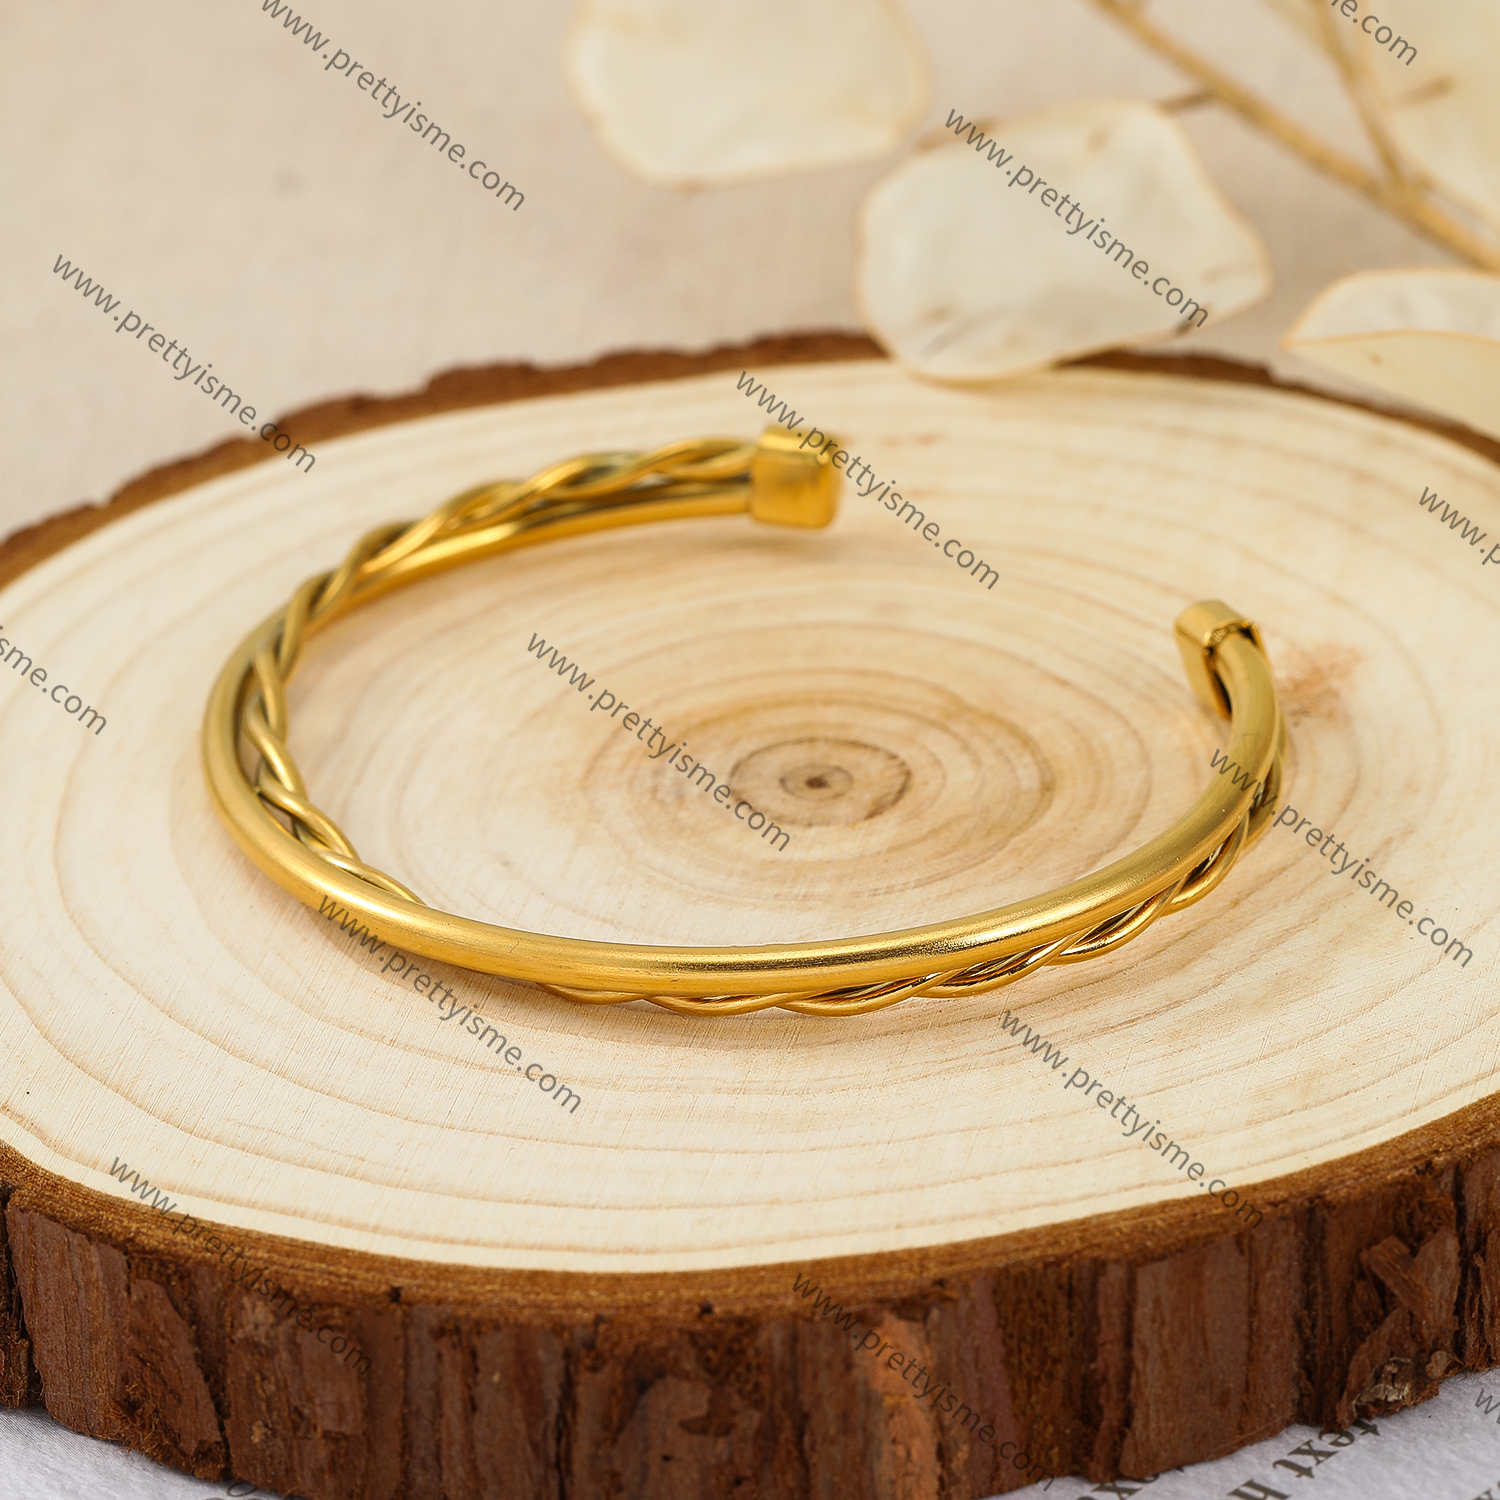 Interwoven Smooth Gold Stainless Steel Bracelet Waterproof Elegant Simple Bracelet.webp